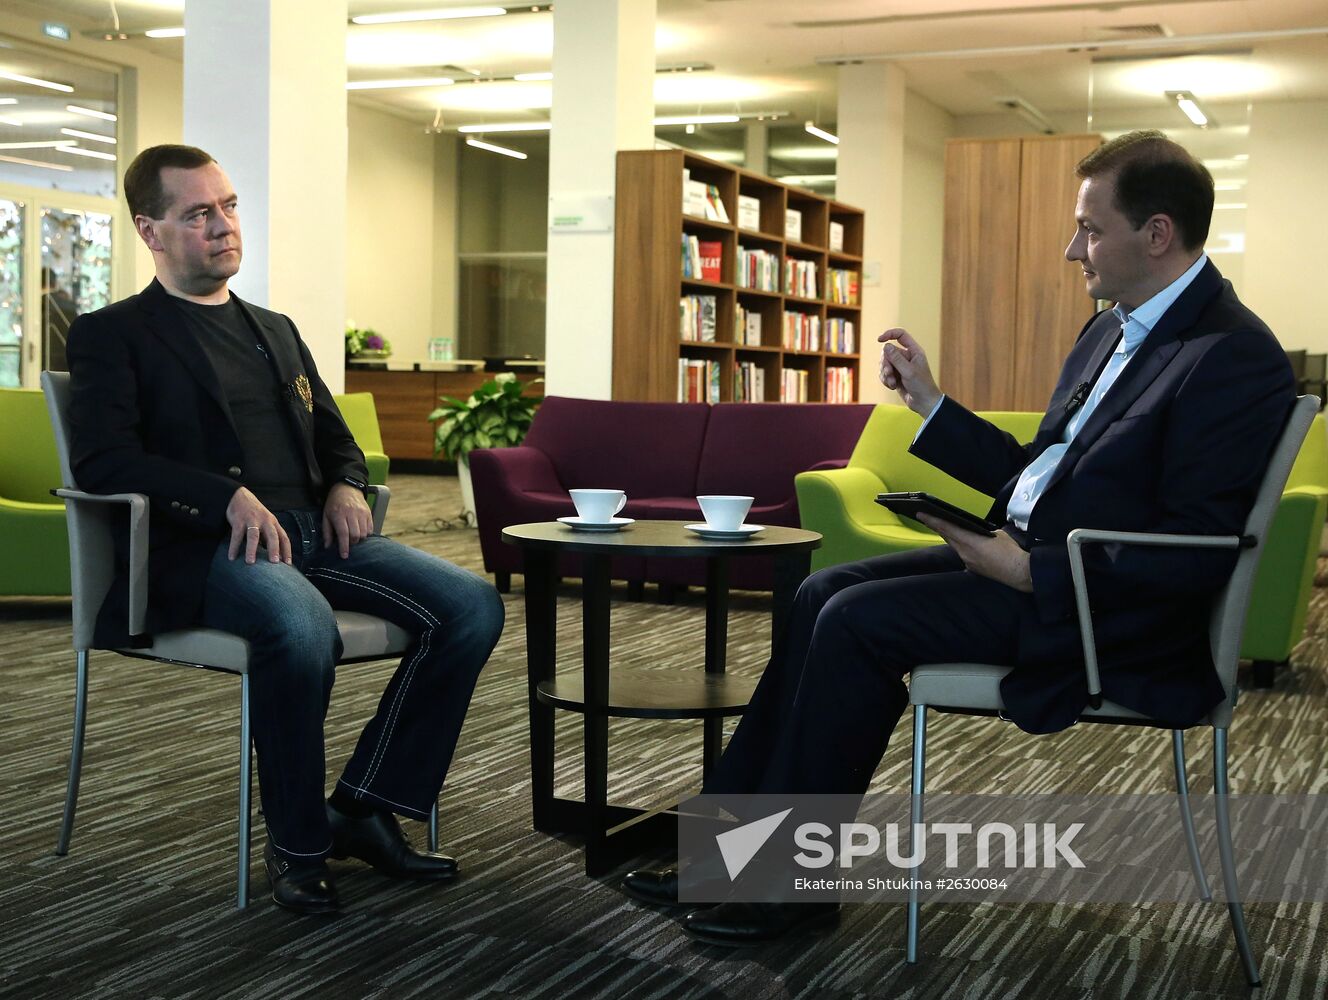 Prime Minister Dmitry Medvedev speaks with Sergei Brilev on Vesti v Subbotu on Rossiya TV network